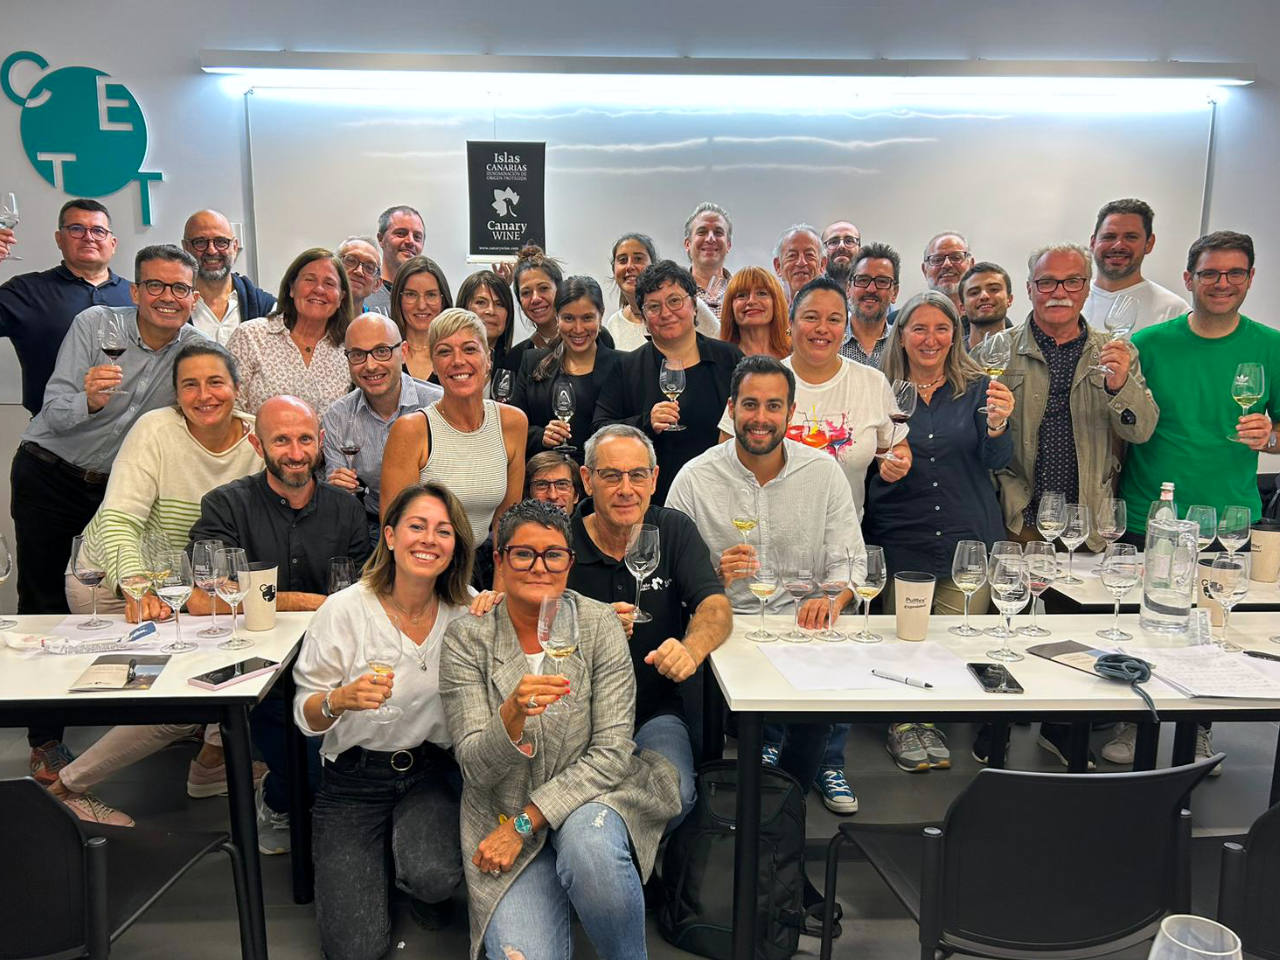 La formación sobre los Canary Wine llega a Cataluña